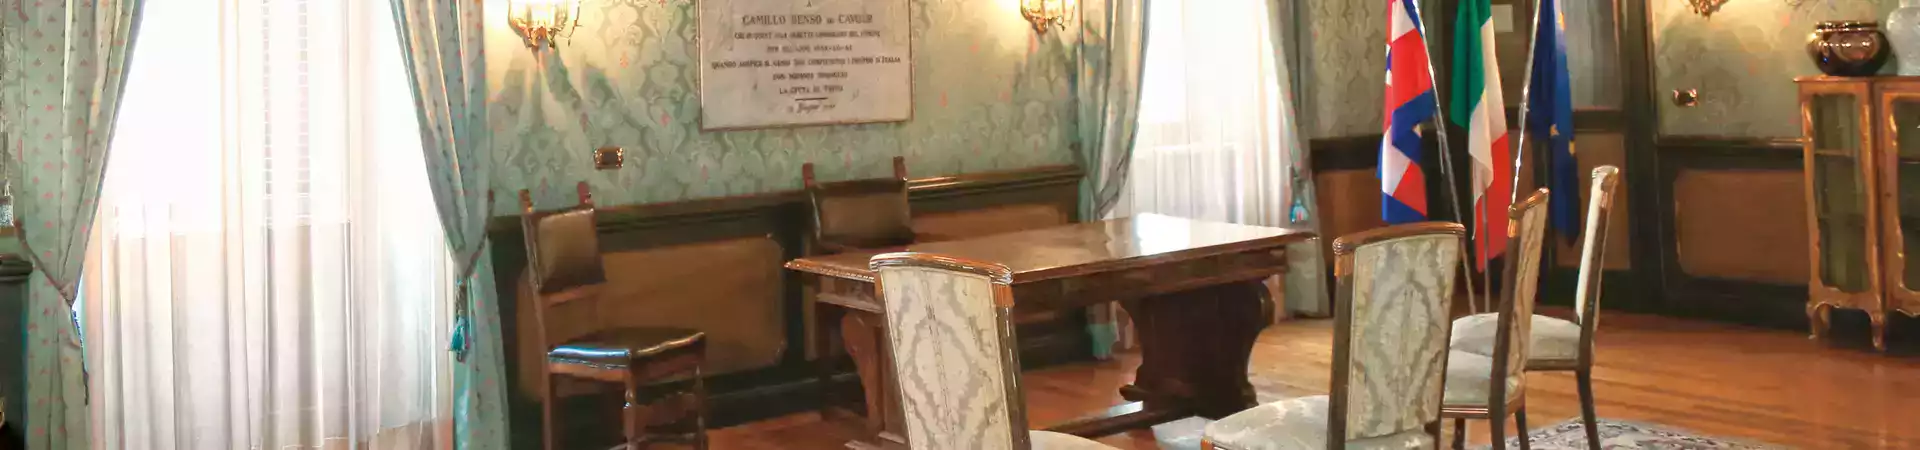 Sala Cavour